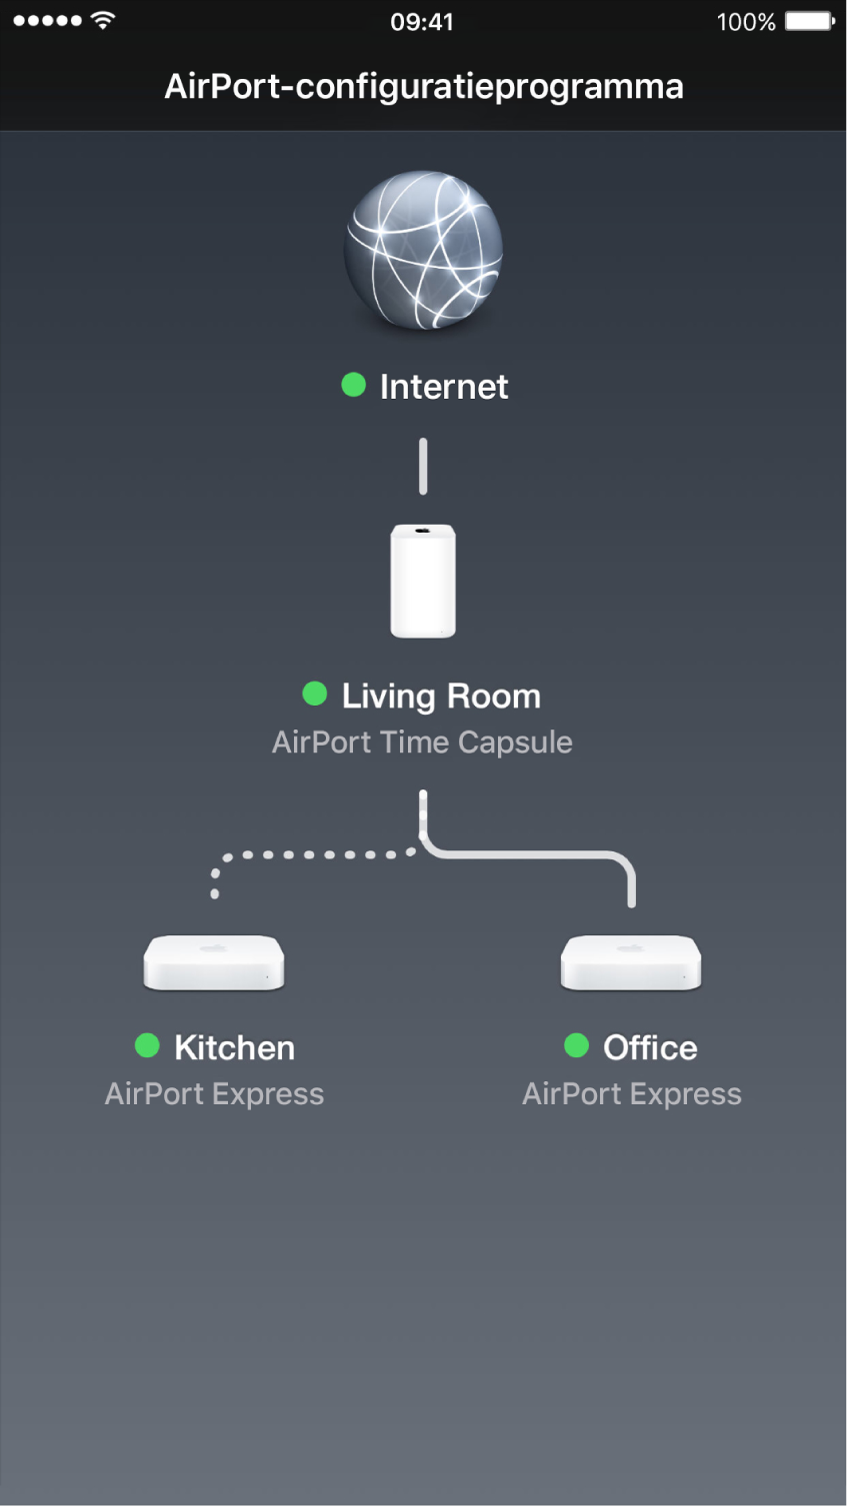 Het grafische overzicht in AirPort-configuratieprogramma voor iOS.